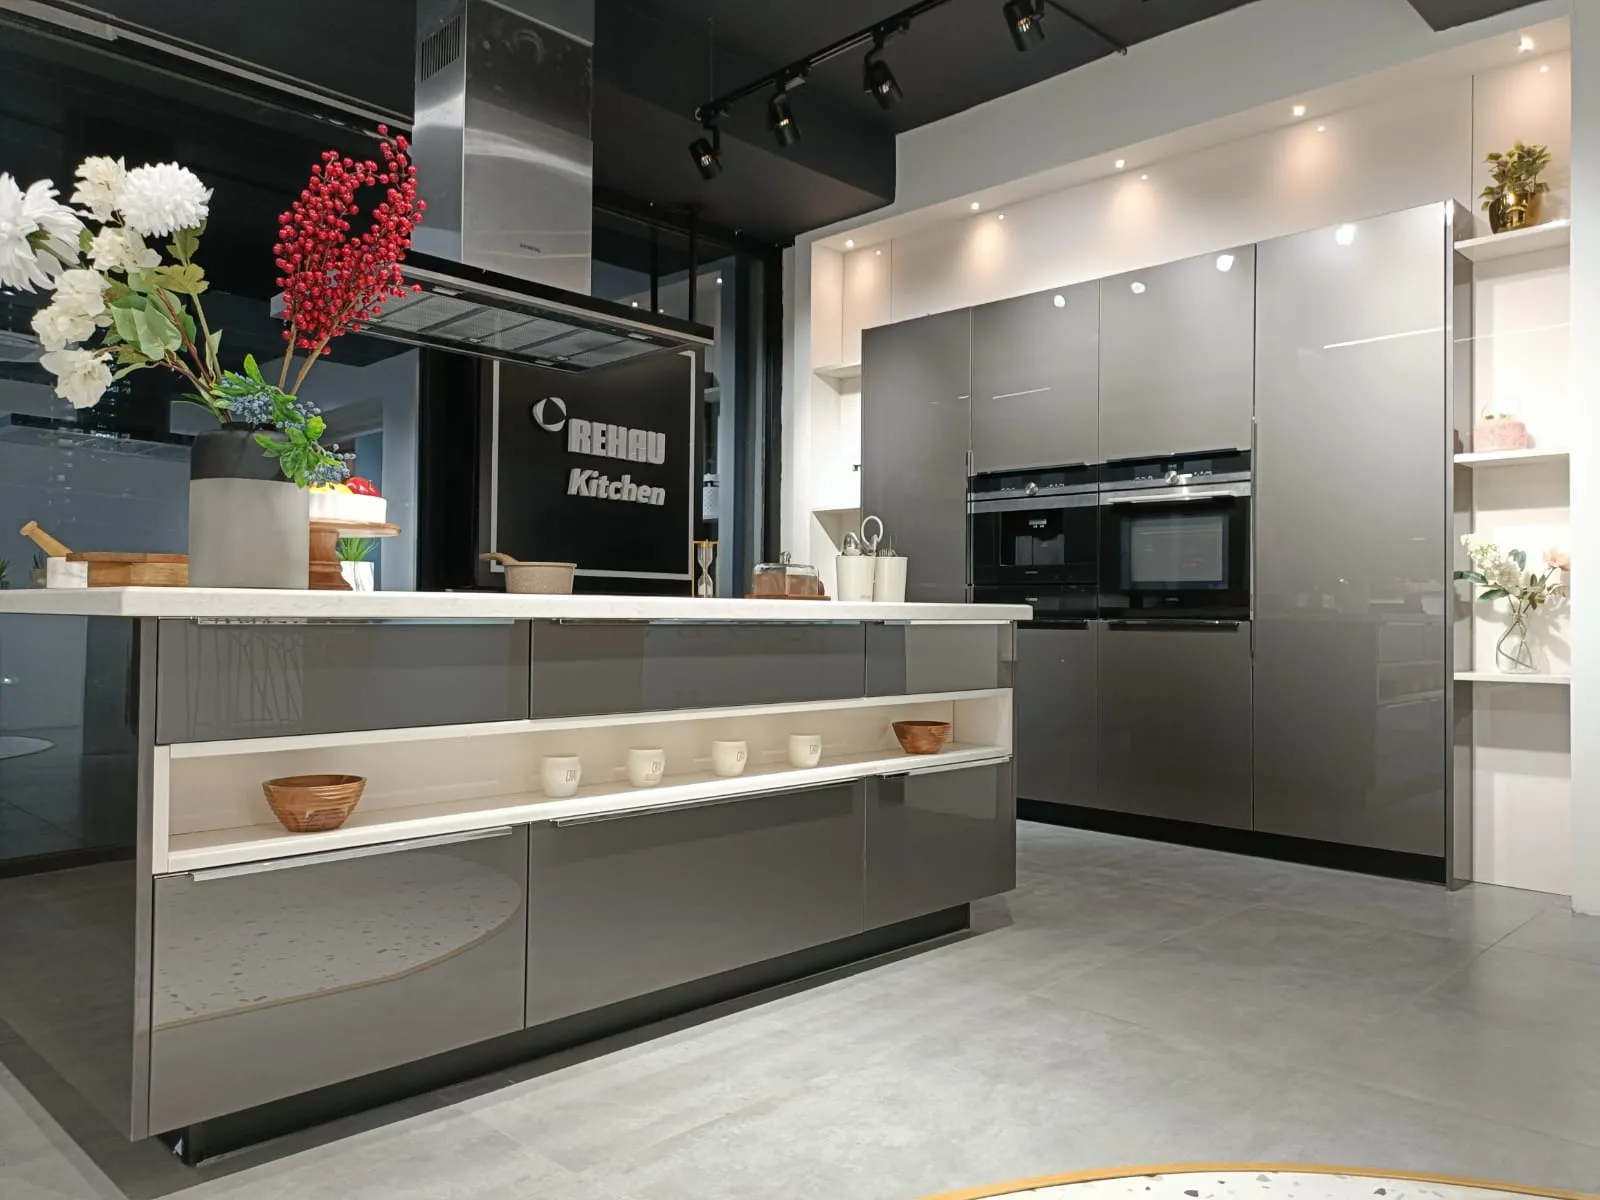 REHAU modular kitchen design hyderabad